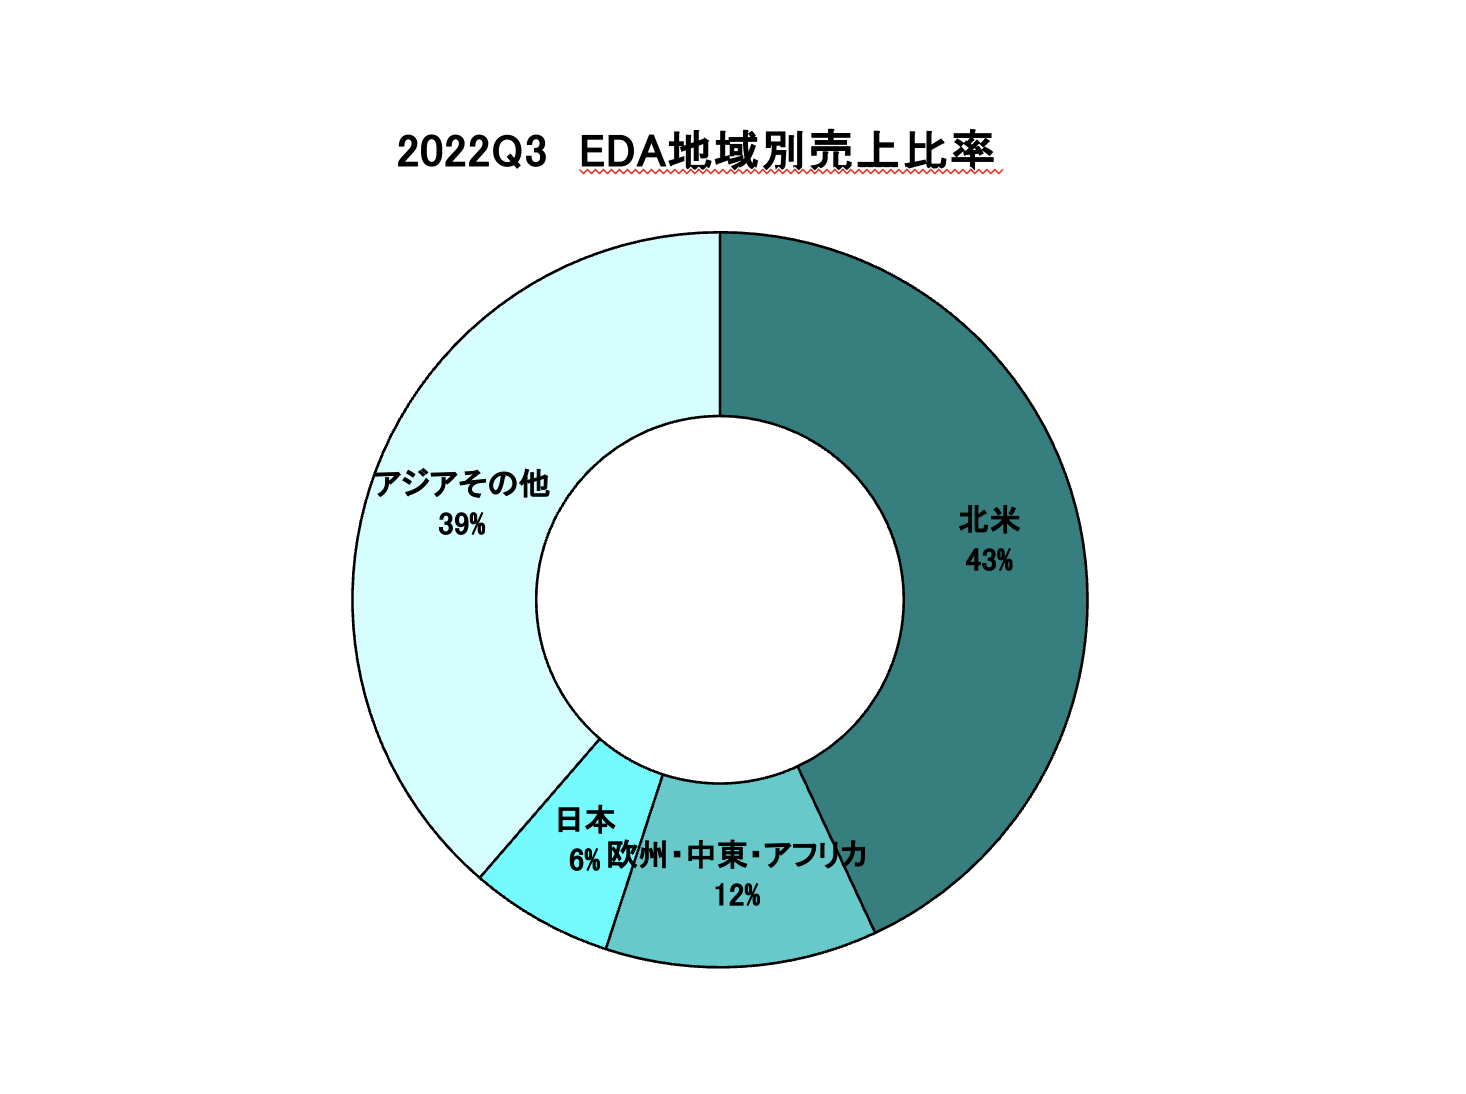 https://www.eda-express.com/%E3%82%B9%E3%82%AF%E3%83%AA%E3%83%BC%E3%83%B3%E3%82%B7%E3%83%A7%E3%83%83%E3%83%88%202023-01-25%2011.17.50.png